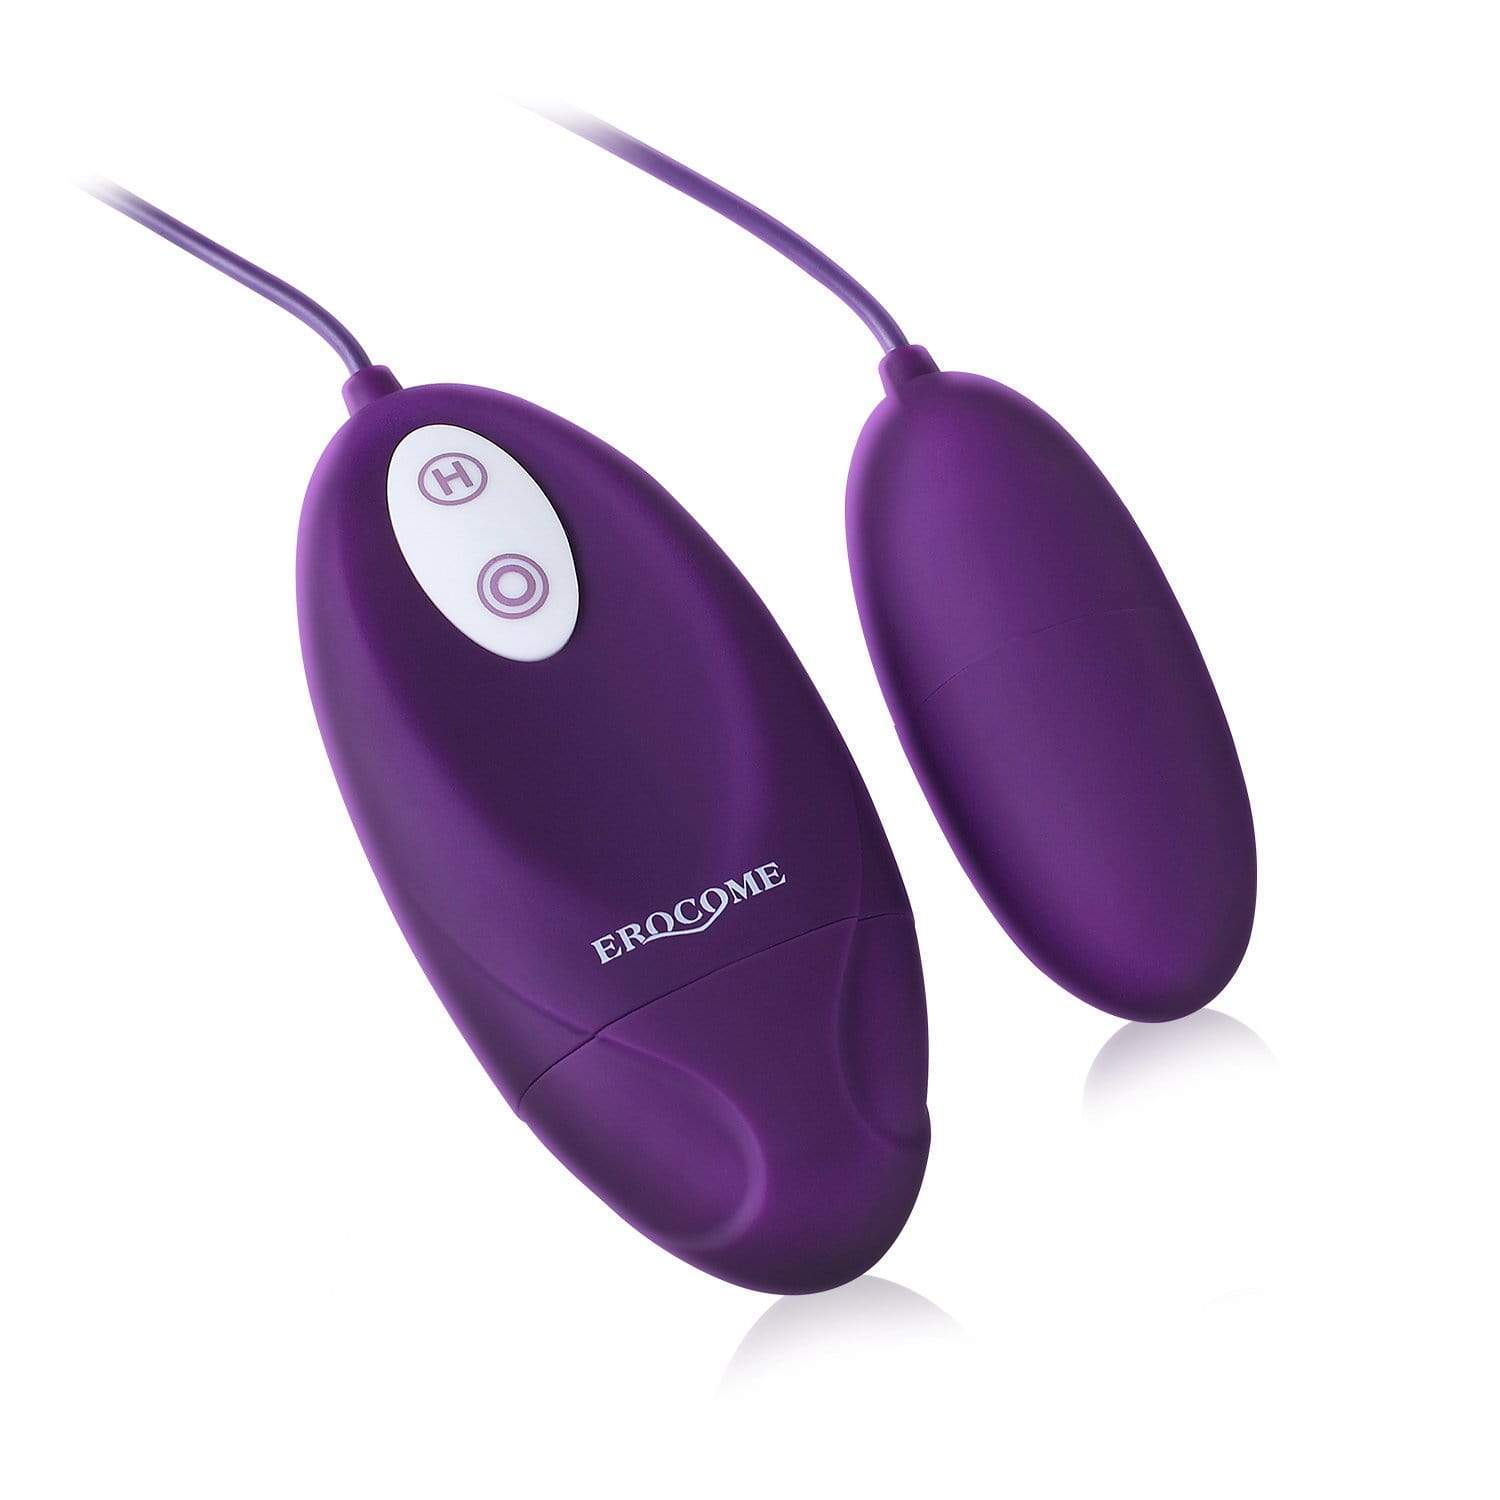 Erocome - Lyra Solo Remote Control Egg Vibrator (Purple) -  Wireless Remote Control Egg (Vibration) Non Rechargeable  Durio.sg